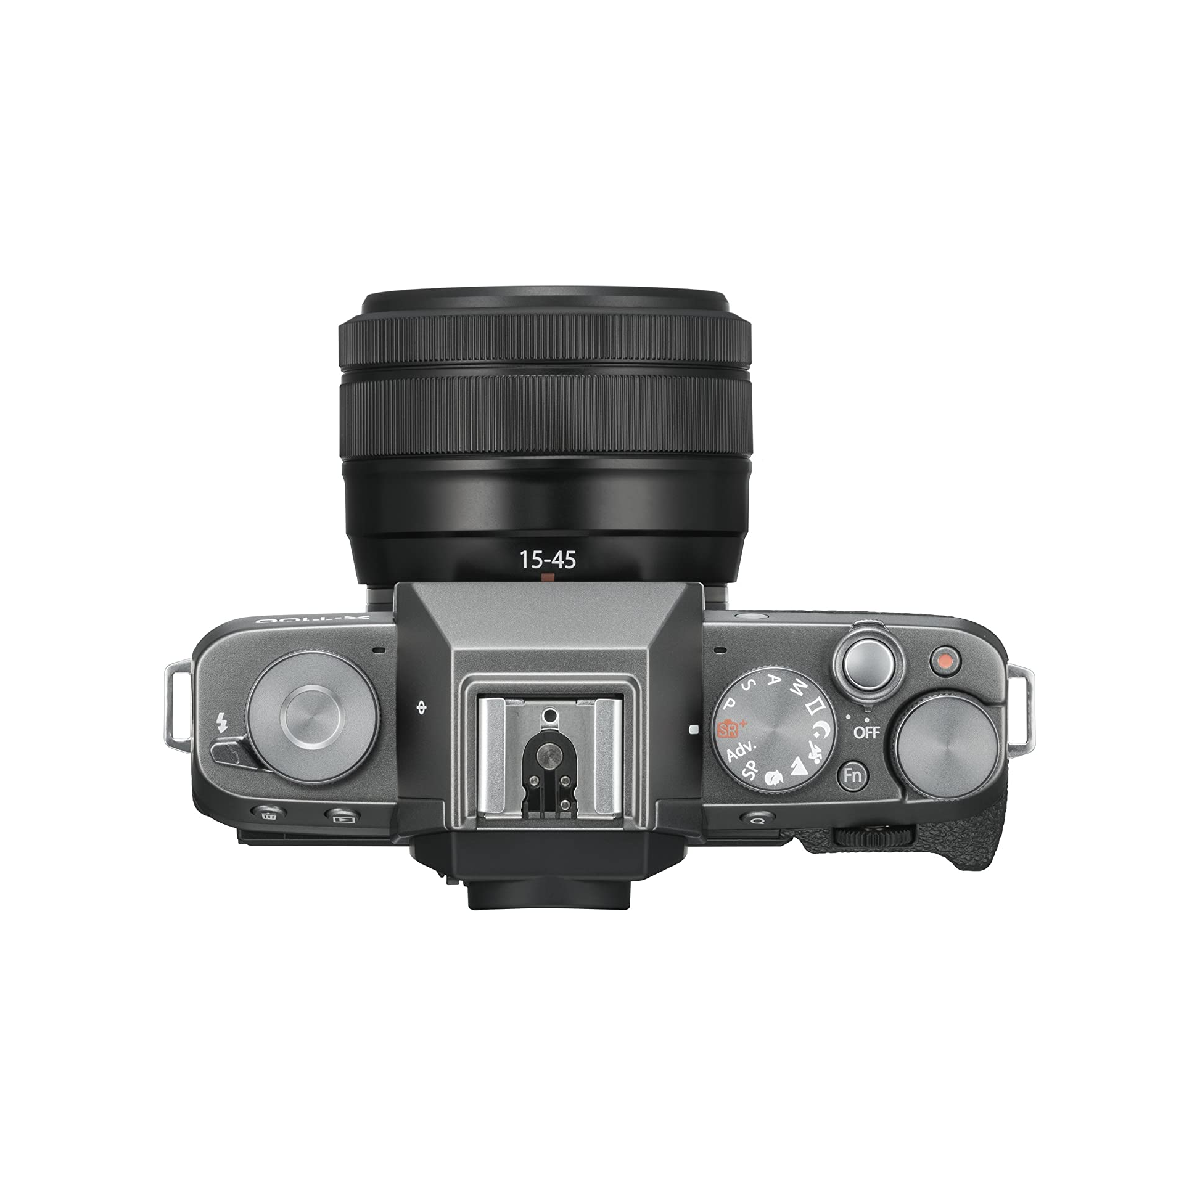 Fujifilm X Series X-t100 Mirrorless 24.2mp Digital Slr Camera